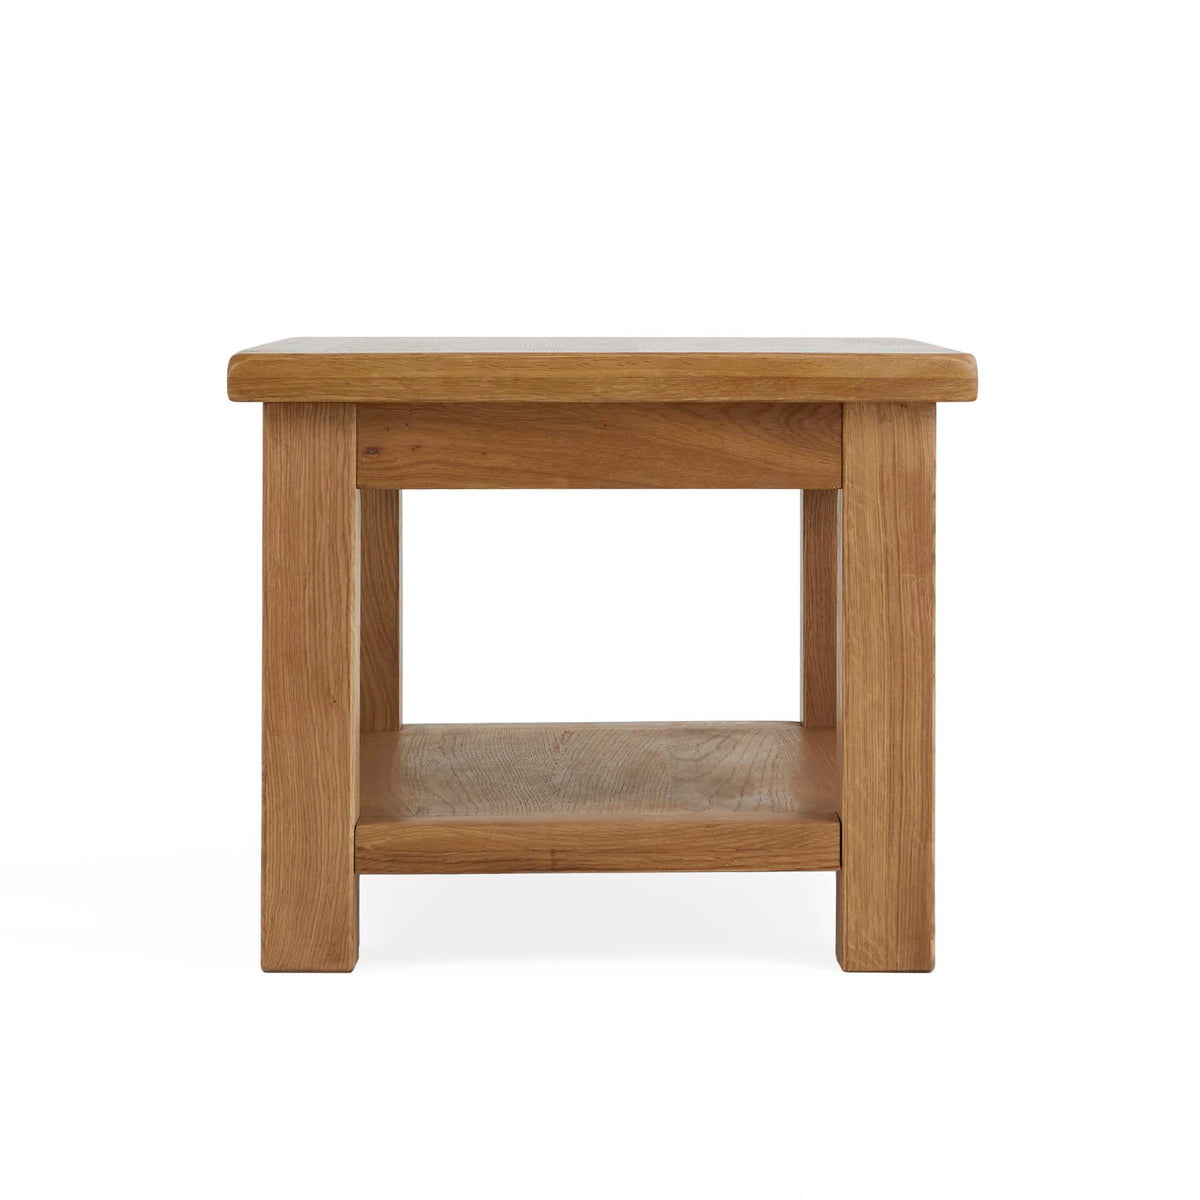 Zelah Oak Coffee Table - Short side view